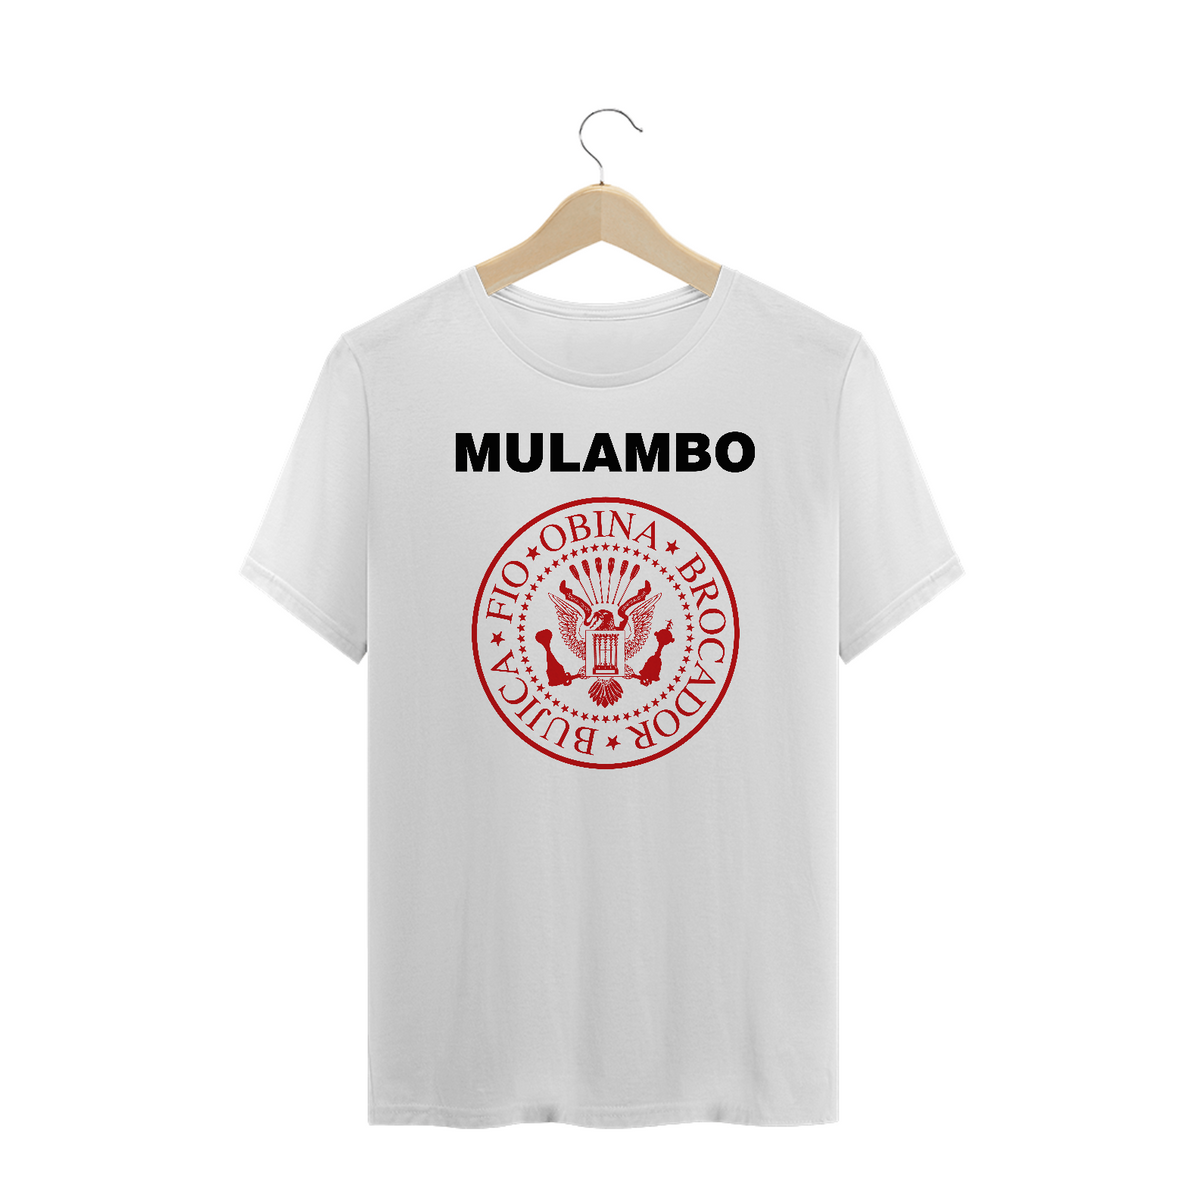 Nome do produto: Mulambo - Plus Size - Branco/Cinza